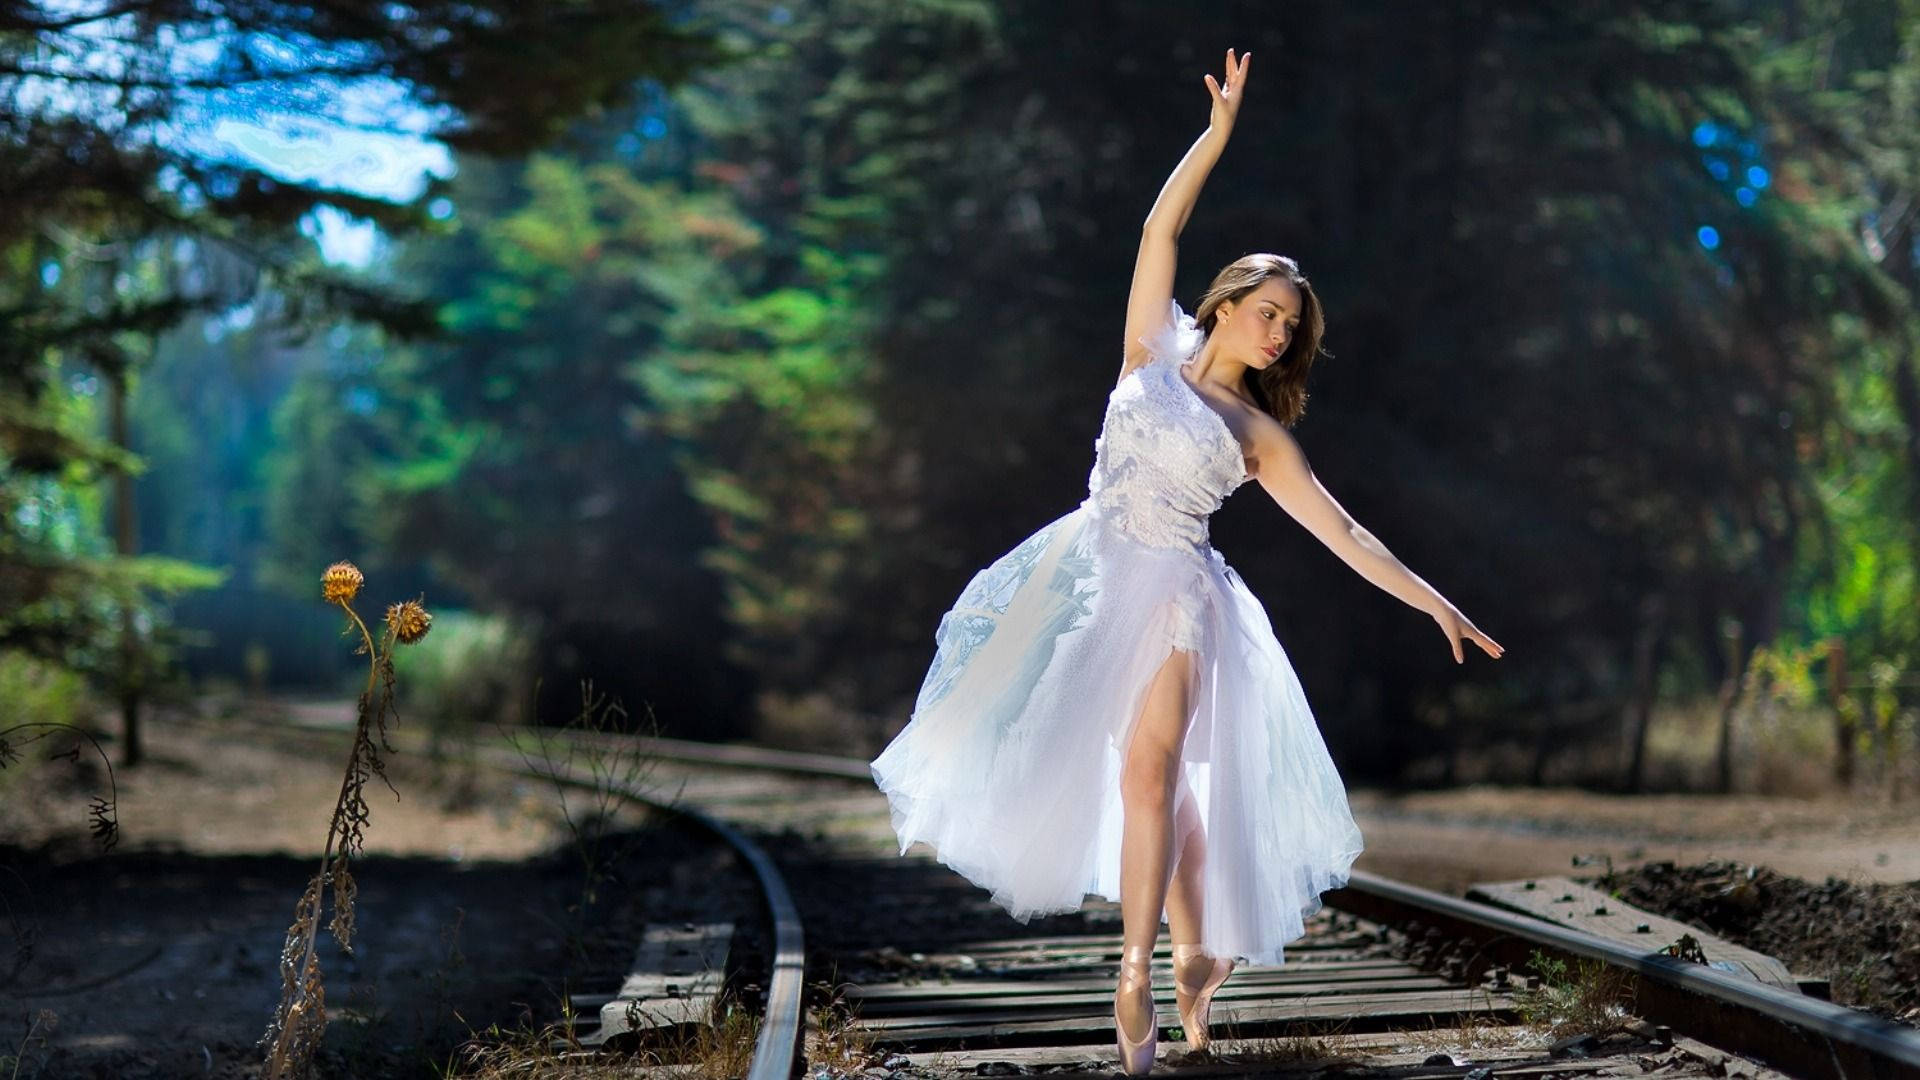 Ballet Dancer On Train Track Background